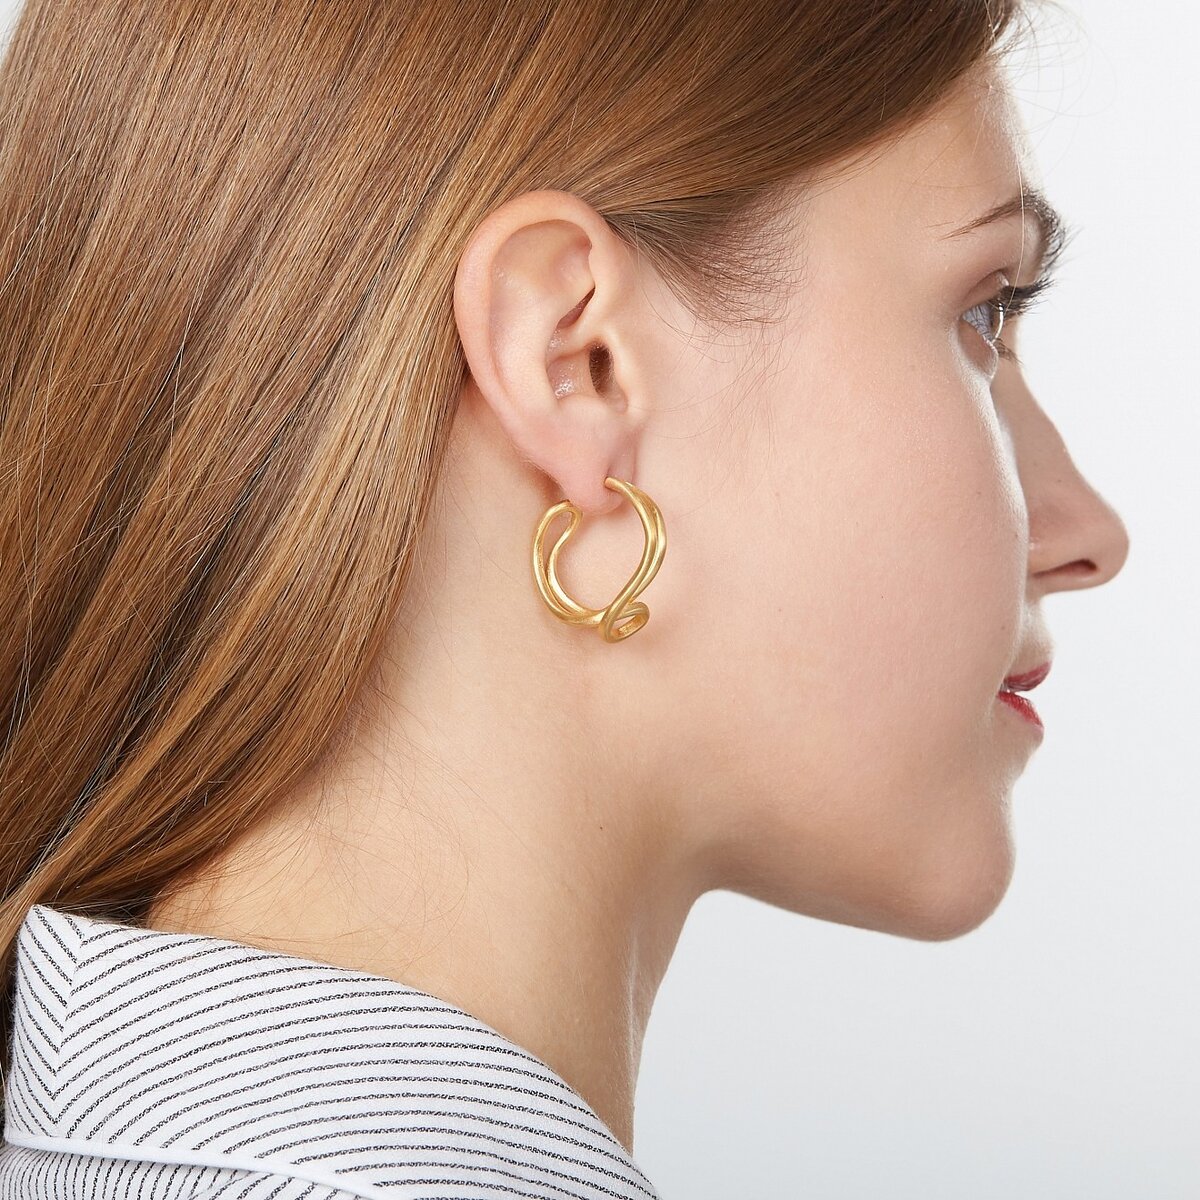 Золотые серьги на ушах у женщин